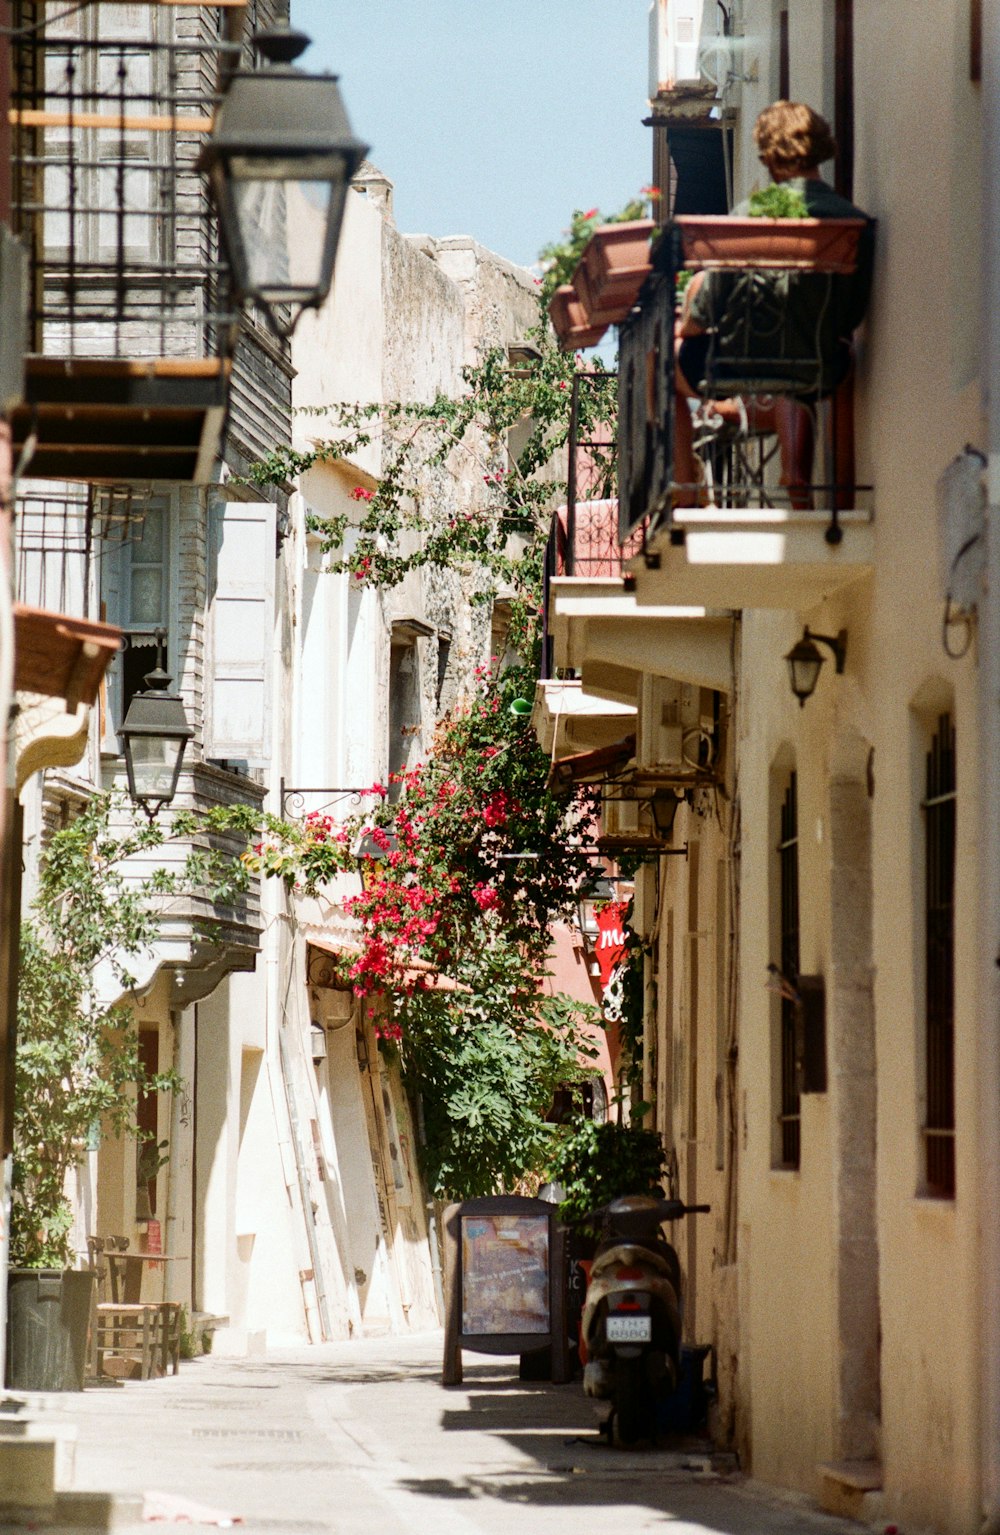 uma rua estreita da cidade com flores nas varandas